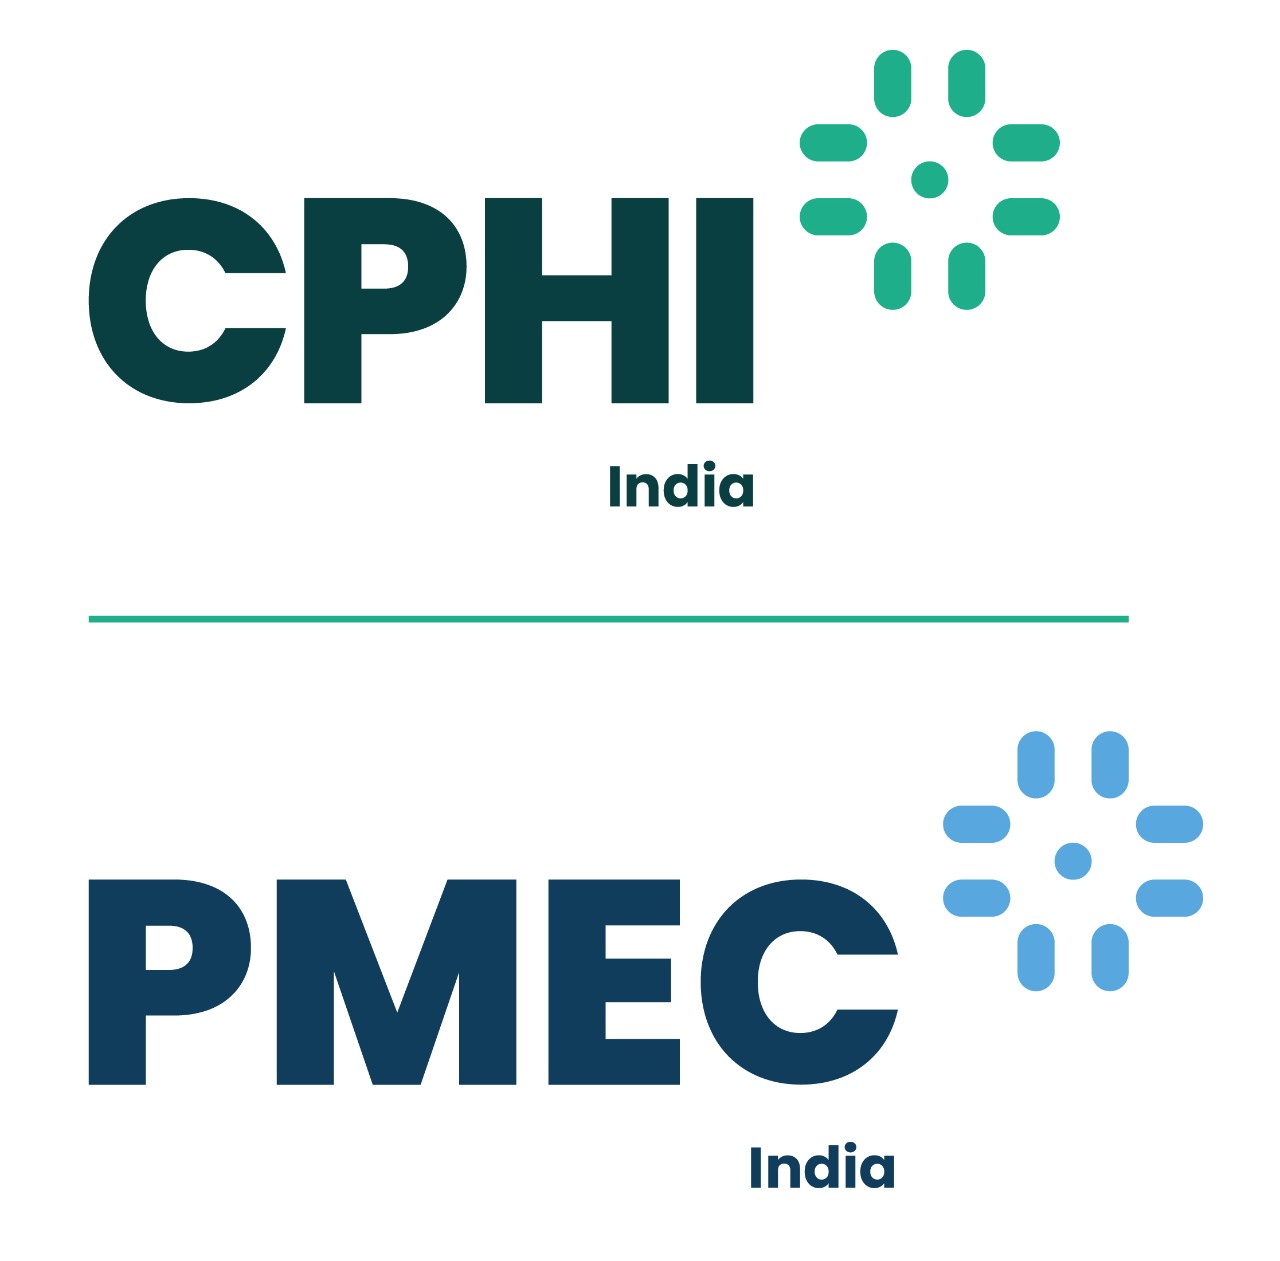 CPhI & P-MEC India 2022